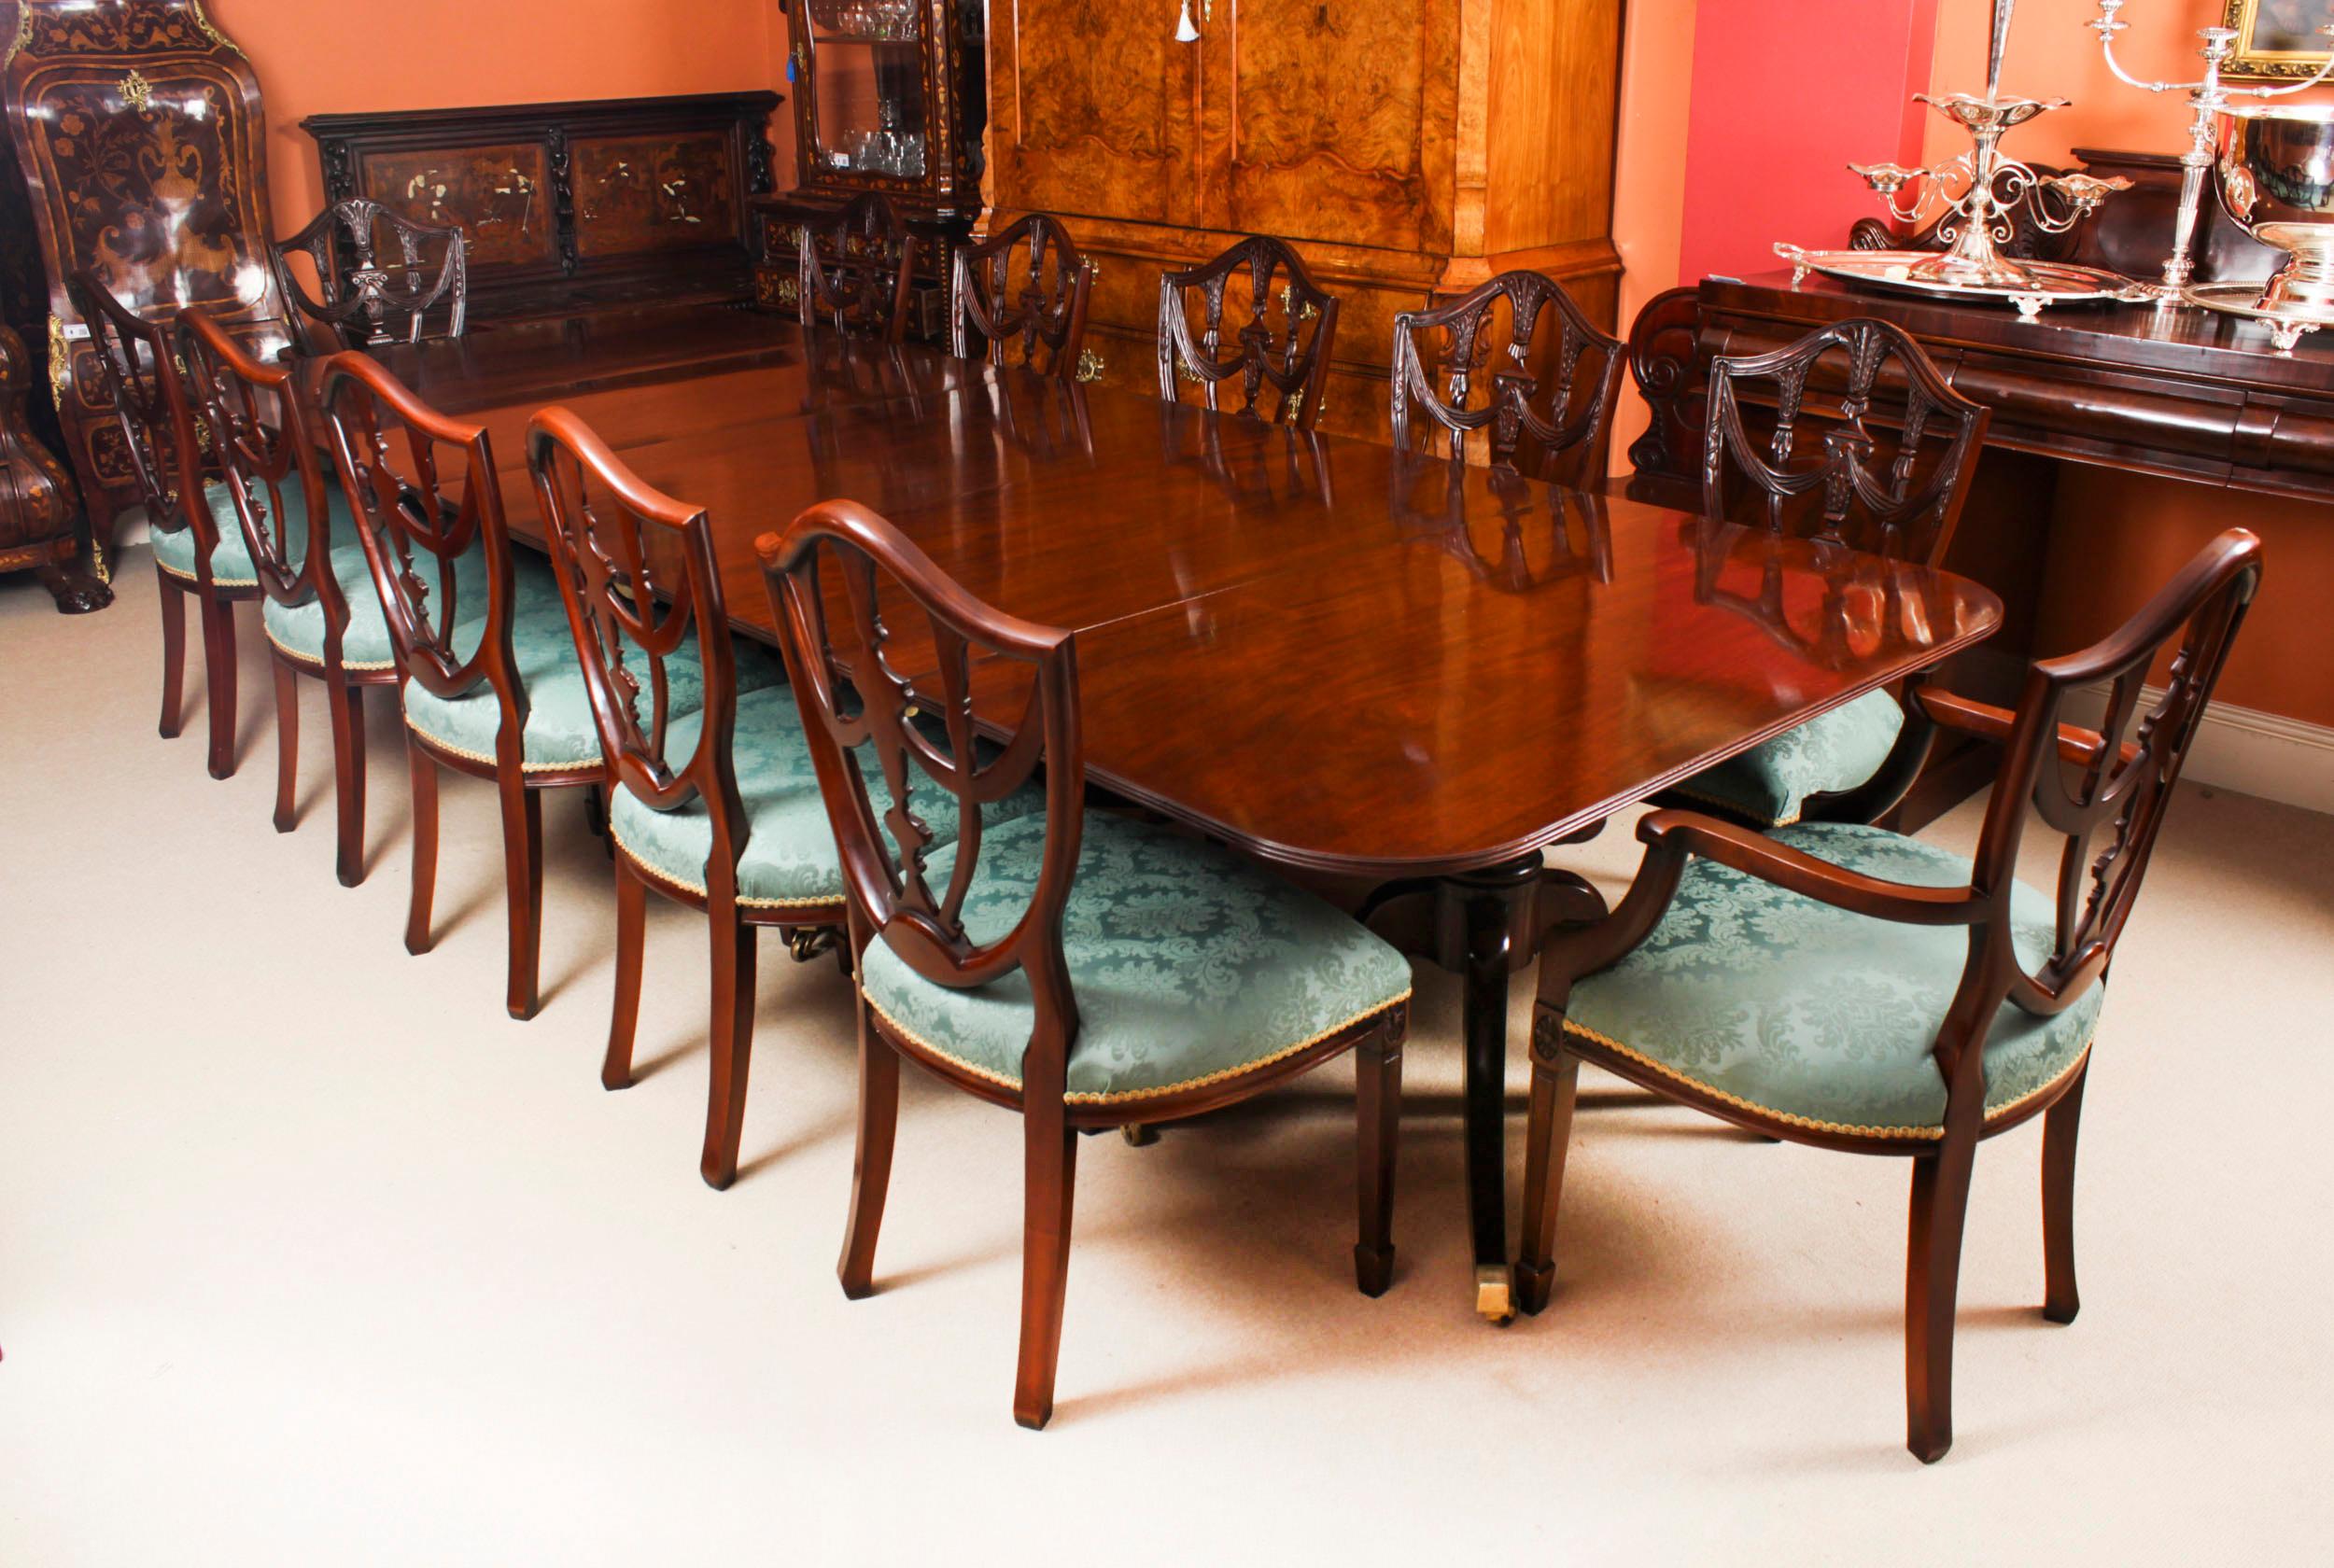 Il s'agit d'une élégante table de salle à manger Regency ancienne pouvant accueillir confortablement douze personnes, datant d'environ 1830.

La table se caractérise par une élégante simplicité, avec des surfaces et des lignes droites et